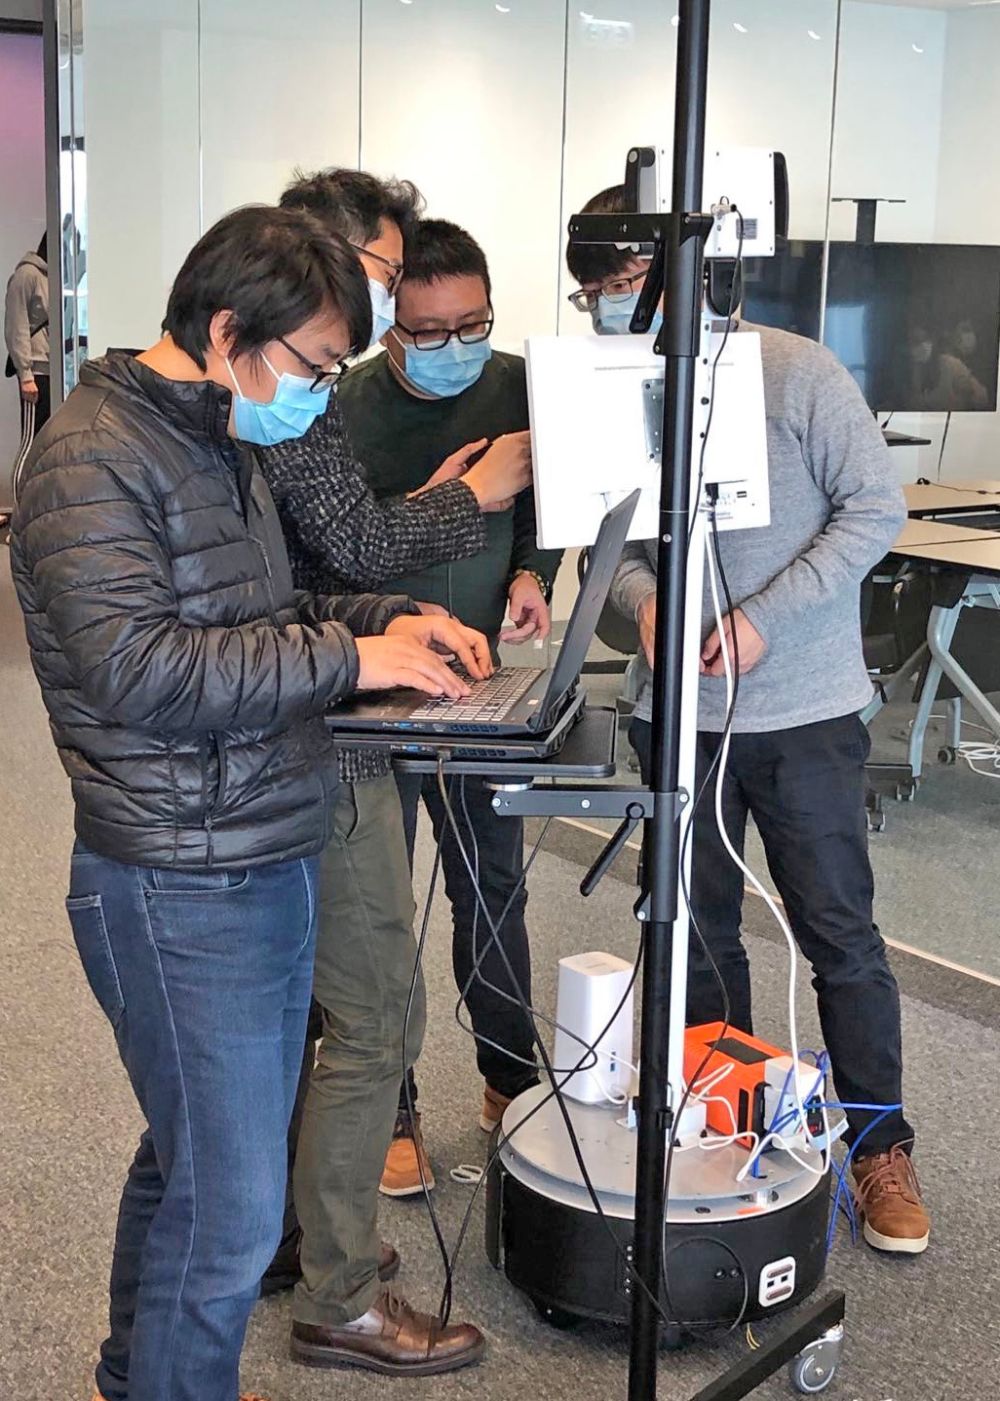 科技公司的团队正在安装和测试“体温探测移动机械人”。